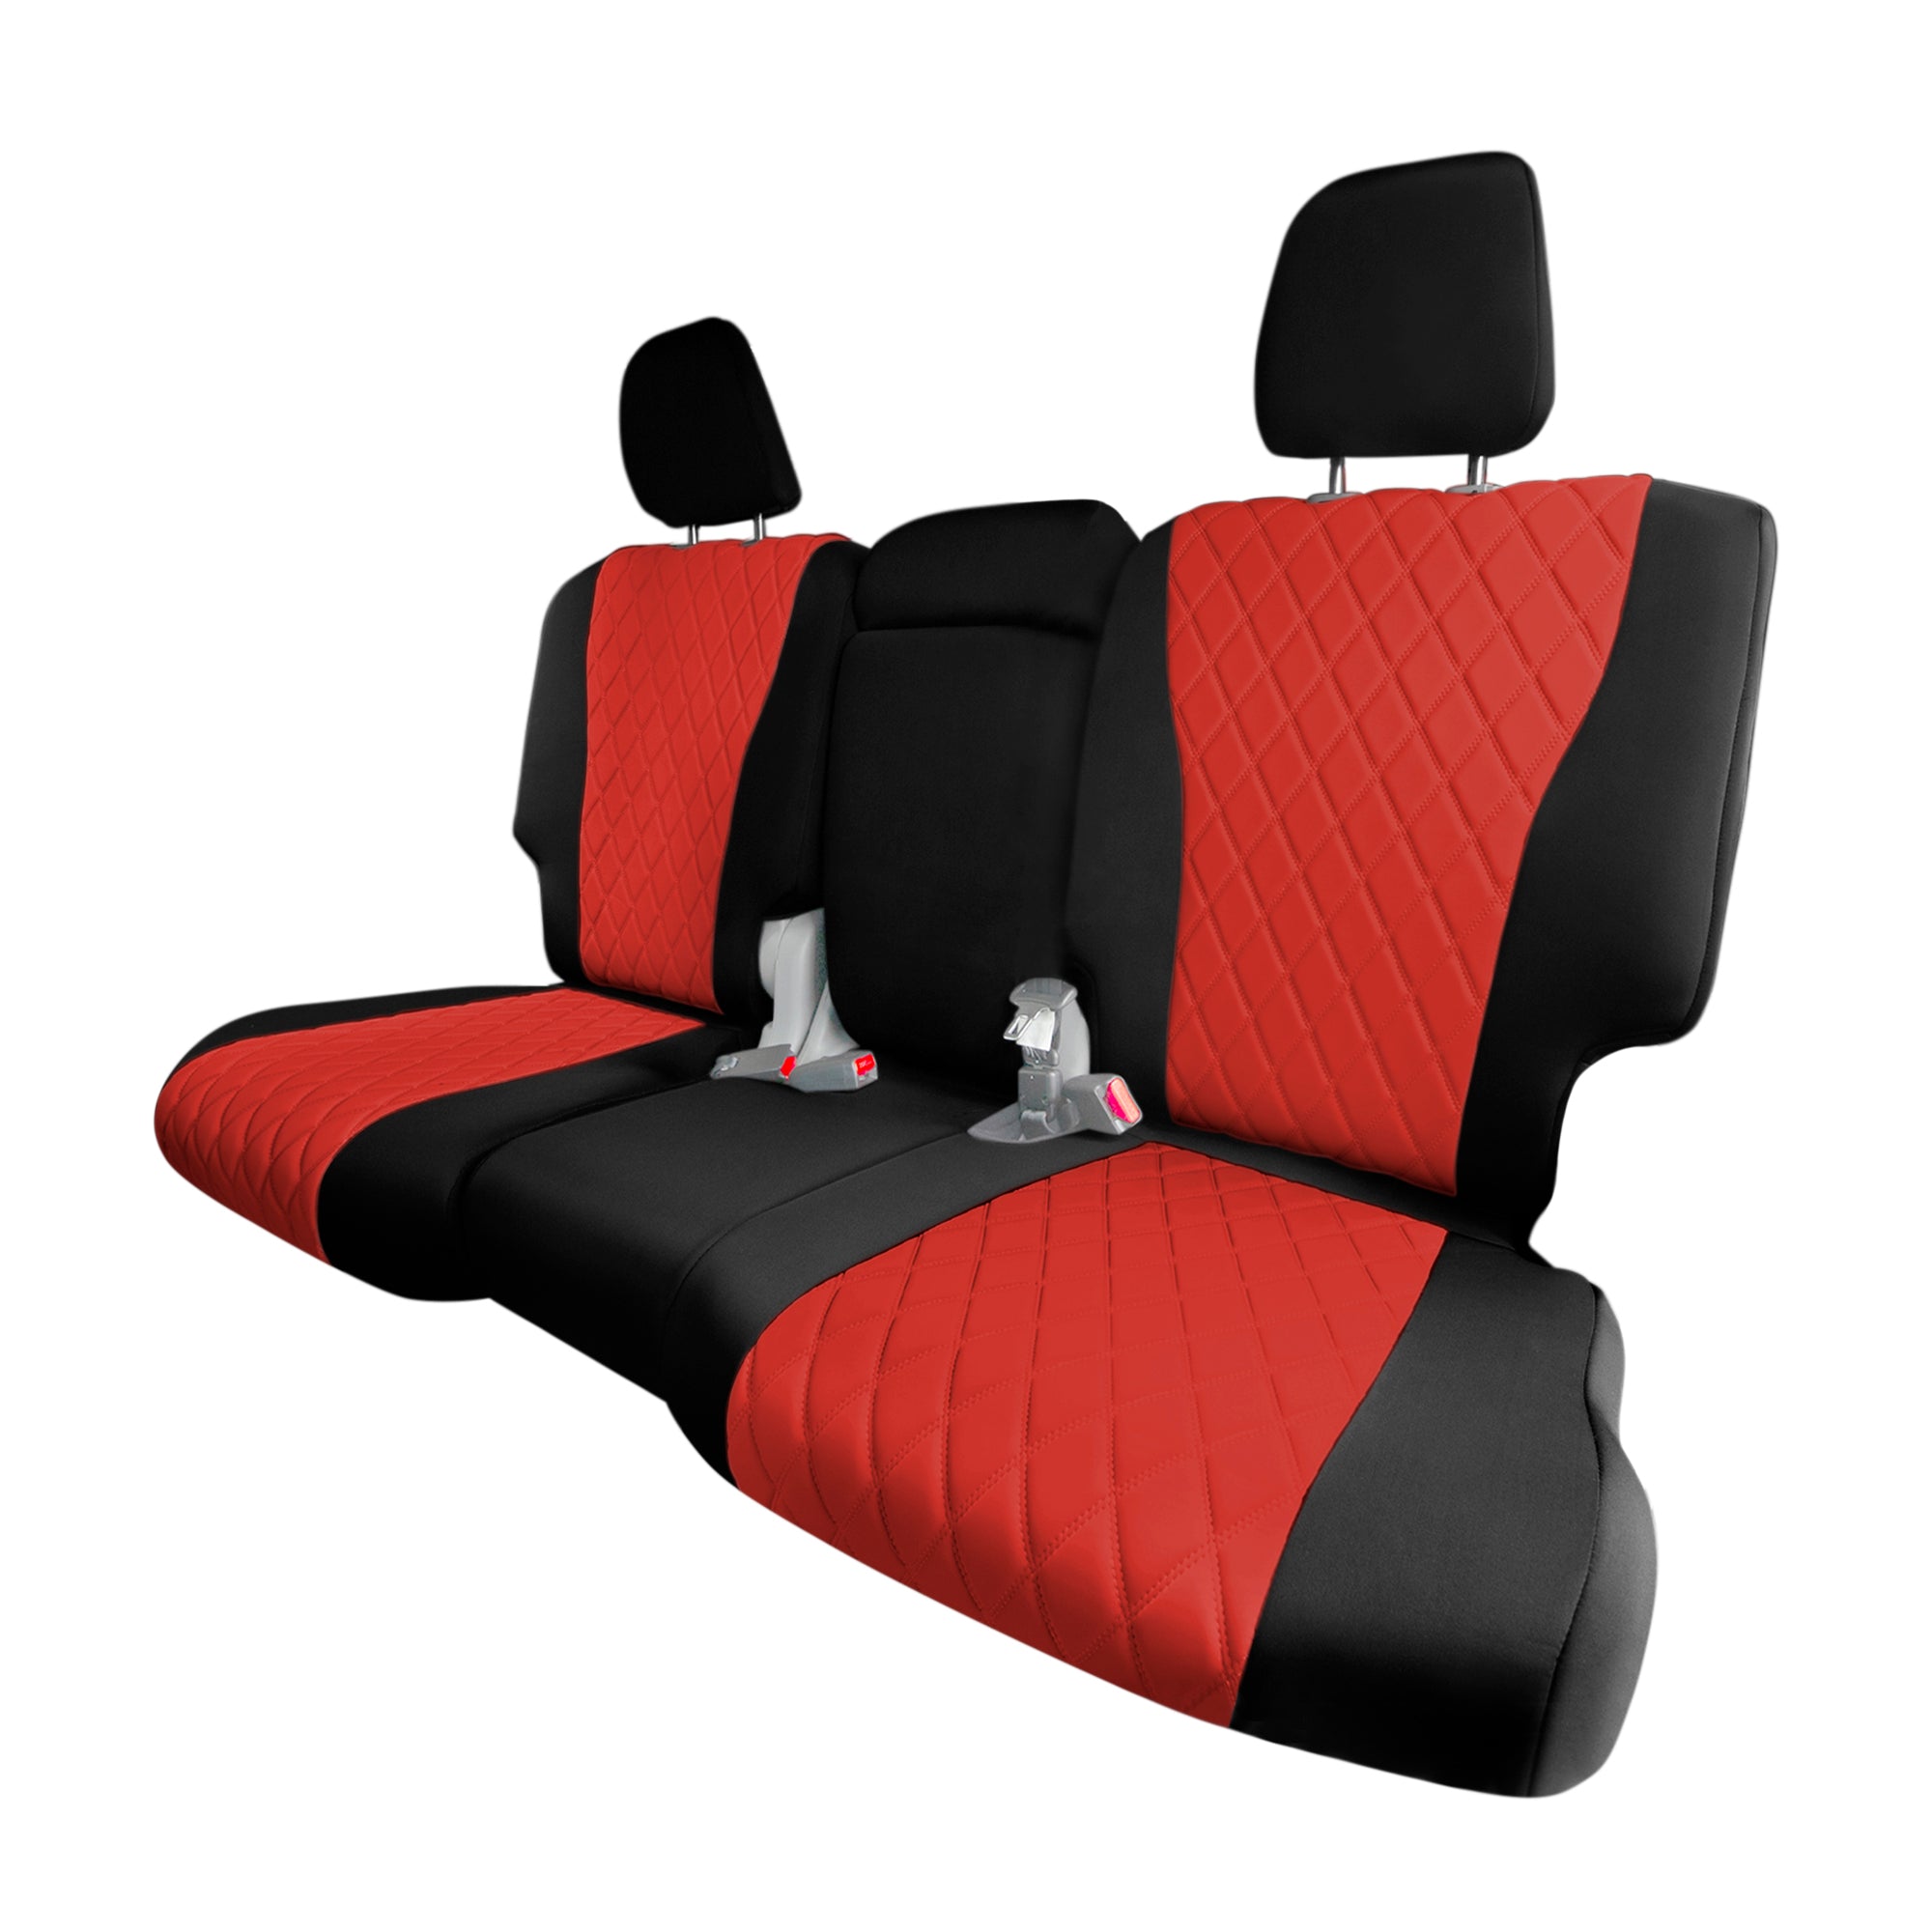 Honda Pilot 2016 - 2022 - 2nd Row Seat Covers - Red Neoprene